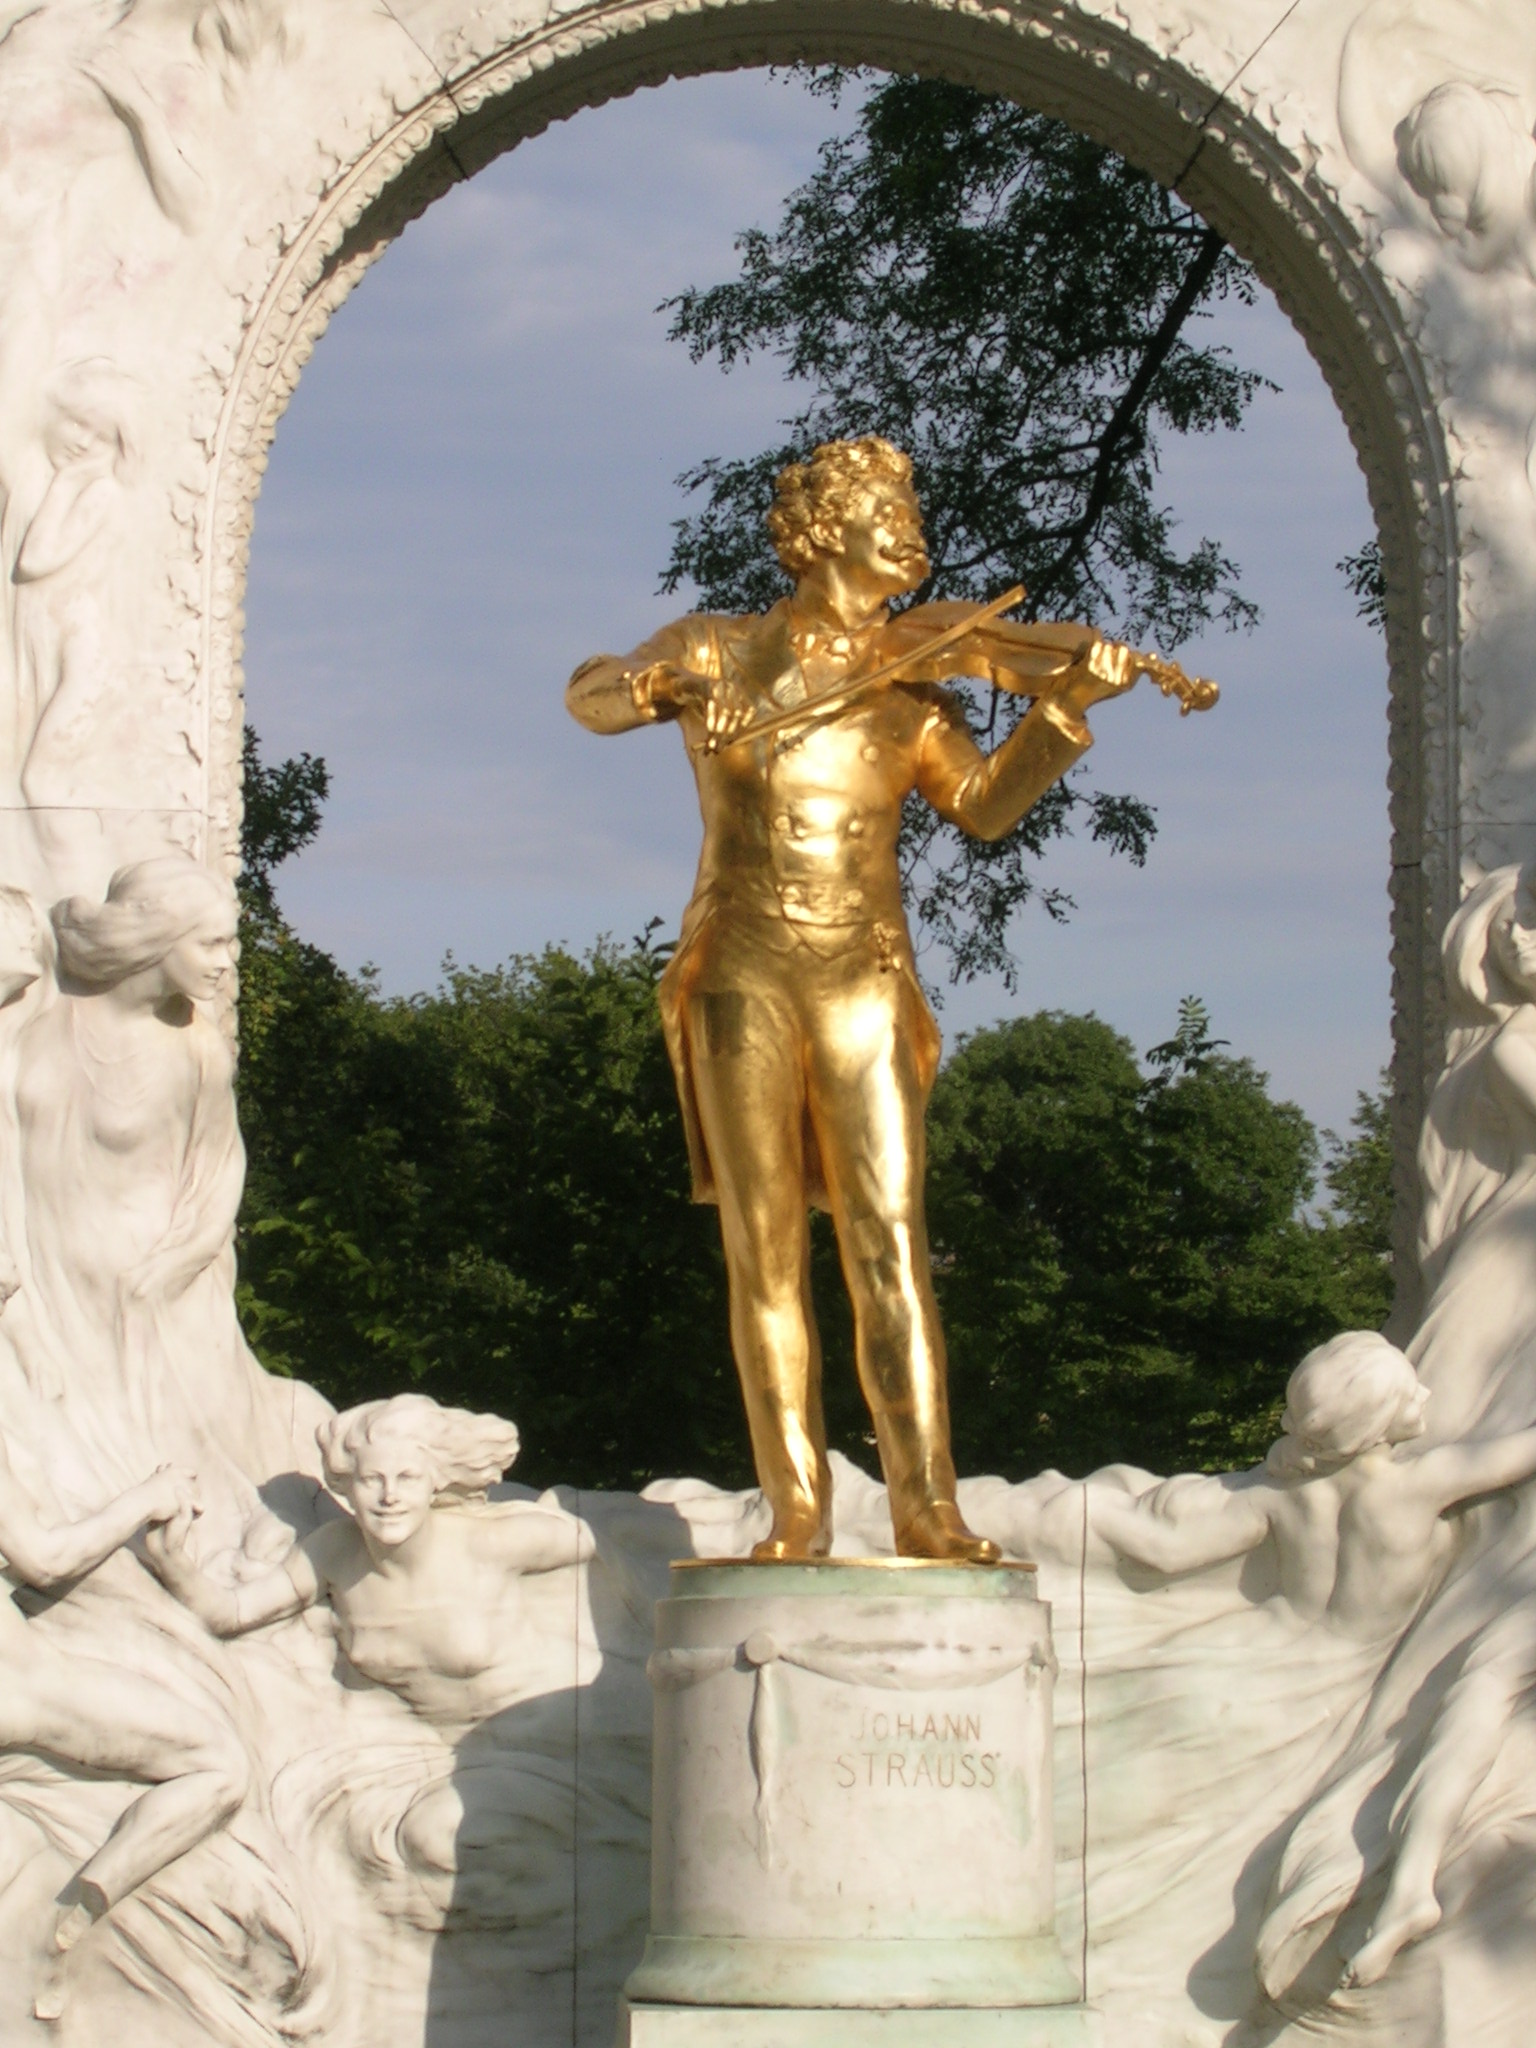 Strauß-Denkmal in Wien